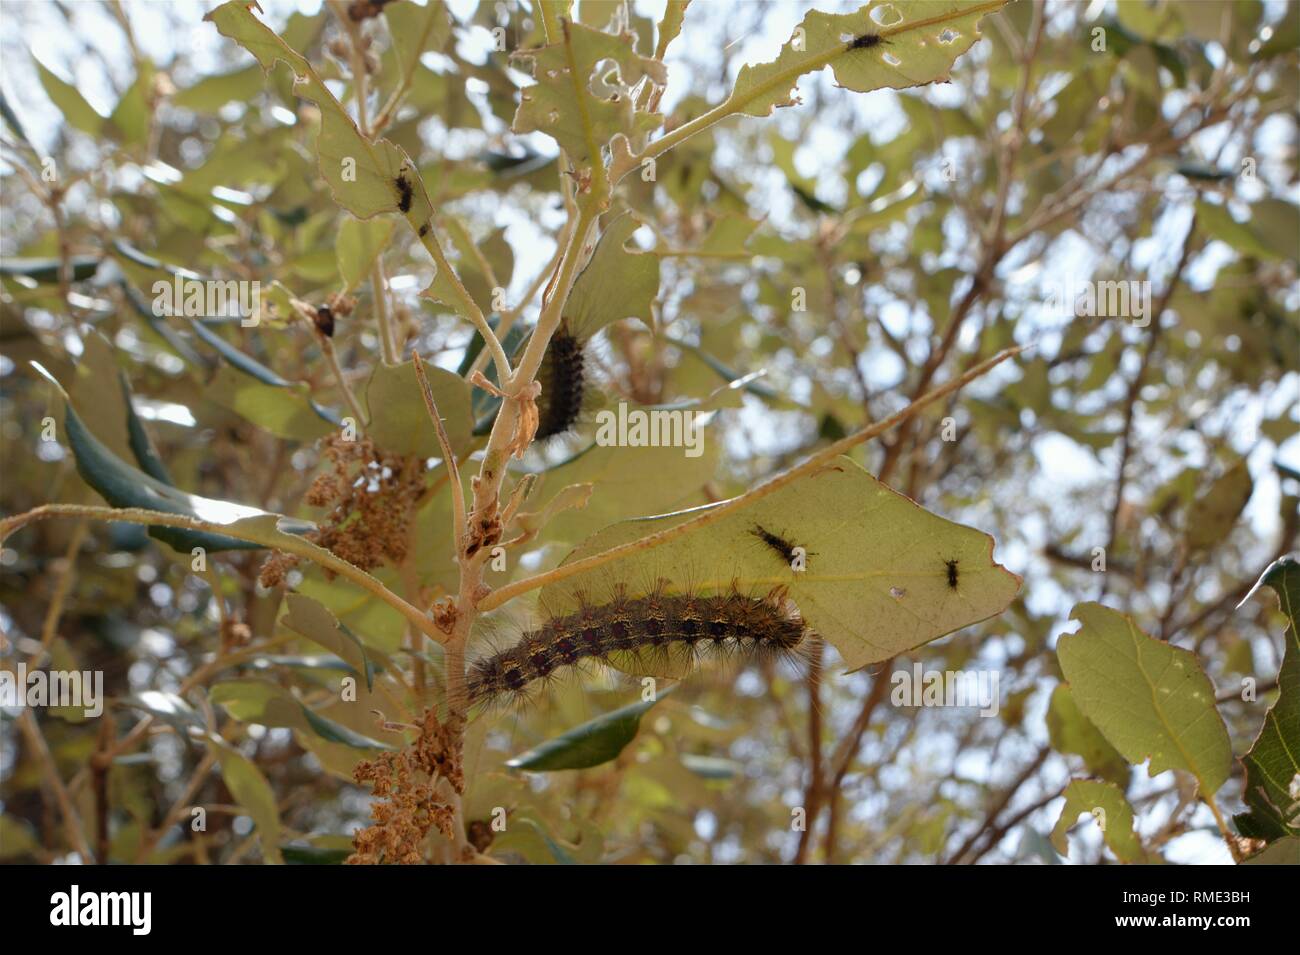 Les chenilles de la spongieuse (Lymantria dispar) se nourrissent de feuilles de chêne et de décimer des chênes (Quercus ilex), ravin de Bacu Goloritze, Baunei, Sardaigne, Italie. Banque D'Images